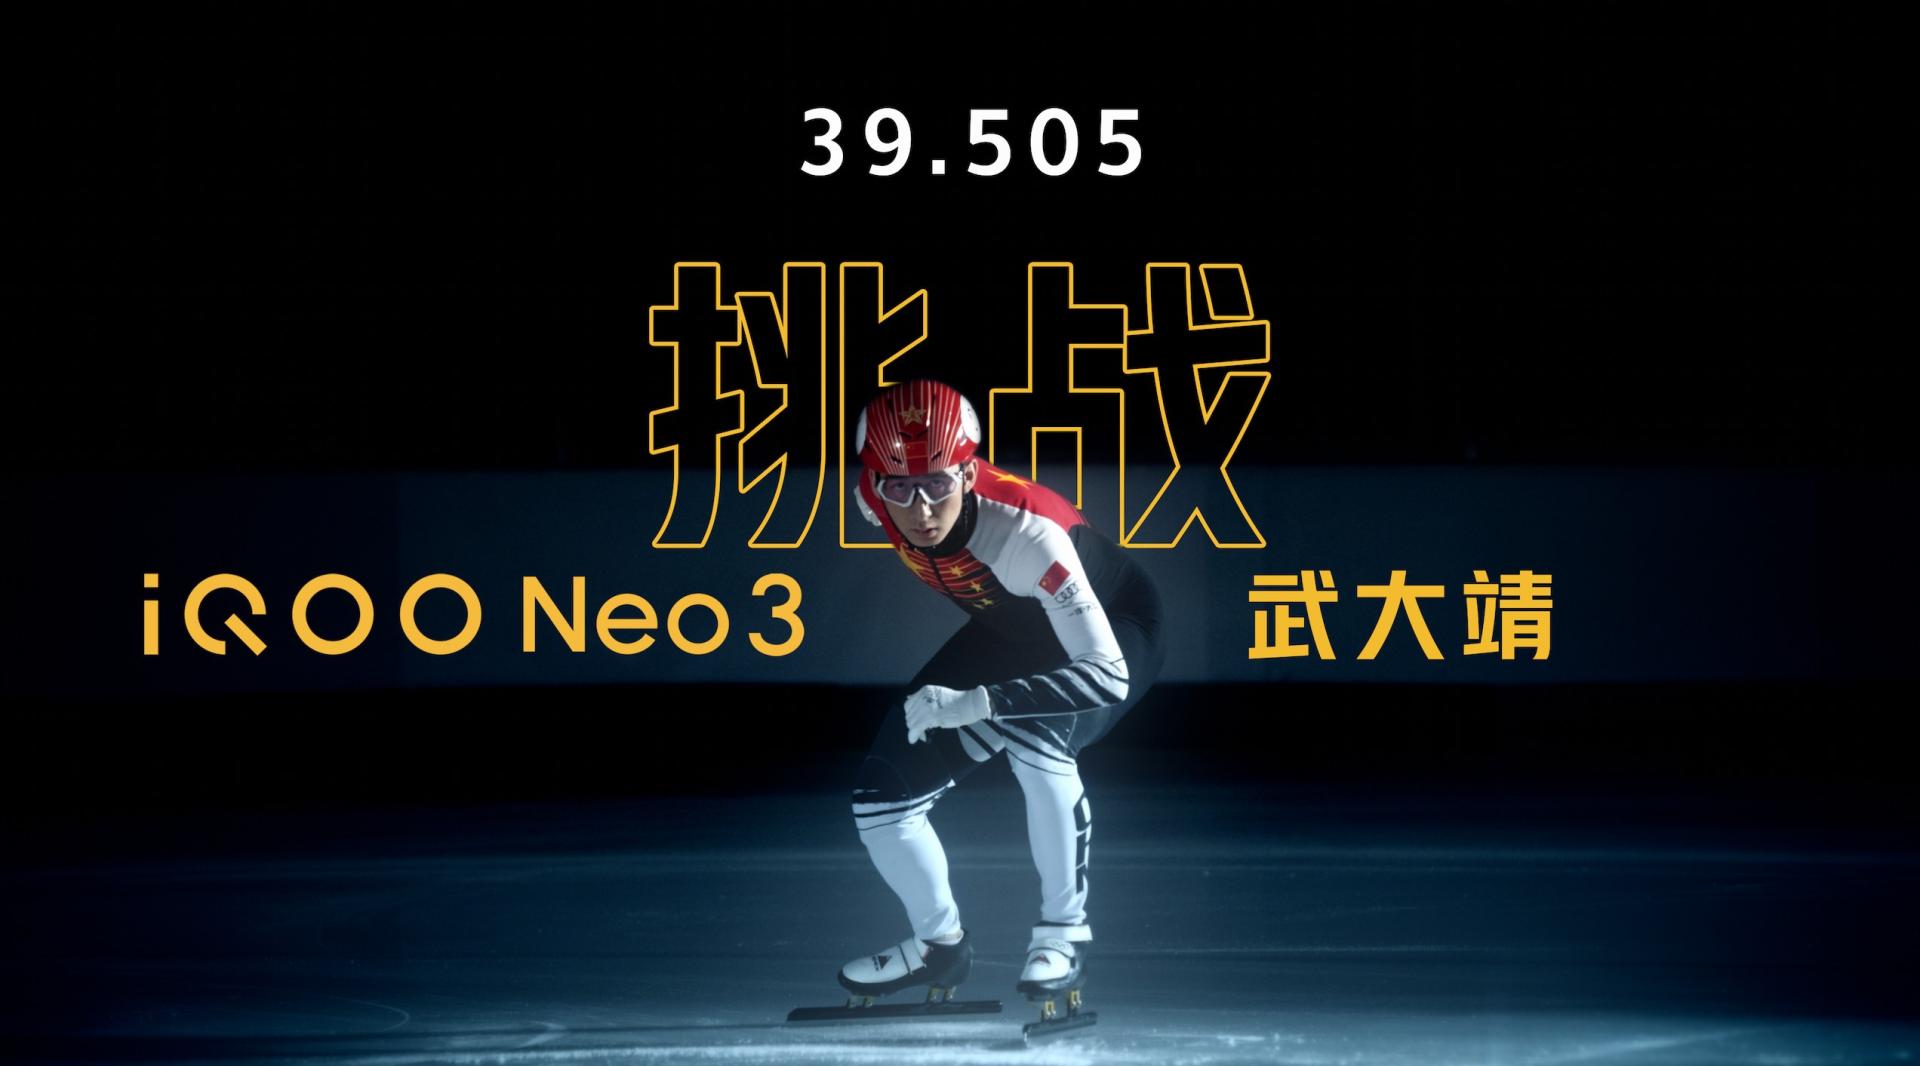 iQOO Neo 3 <冠军速度 做赢者事> TVC 武大靖